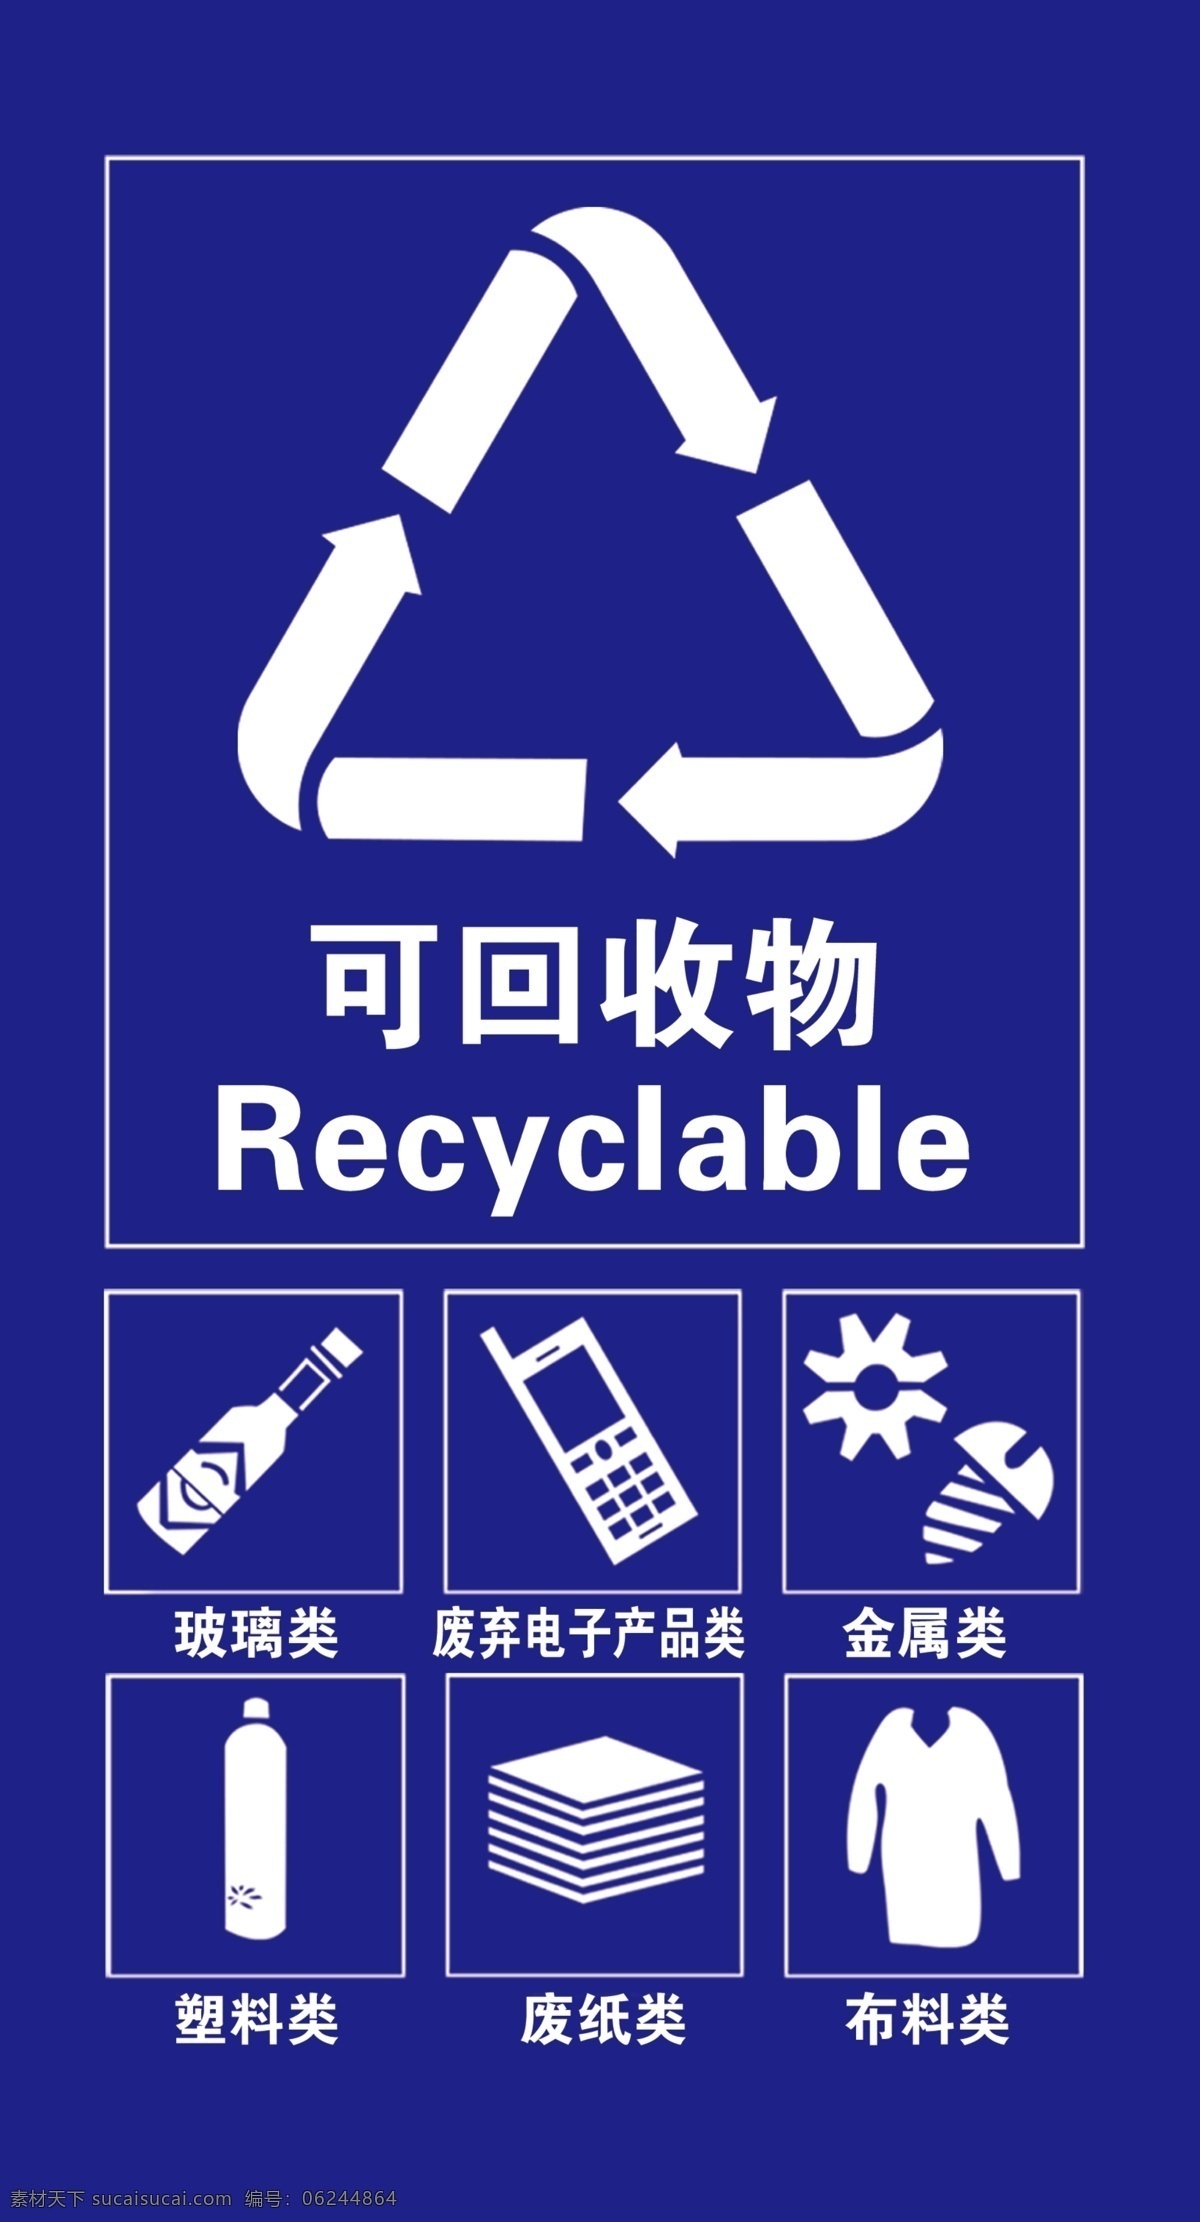 可回收物图片 垃圾分类 可回收垃圾 可回收 可回收物 回收 分层